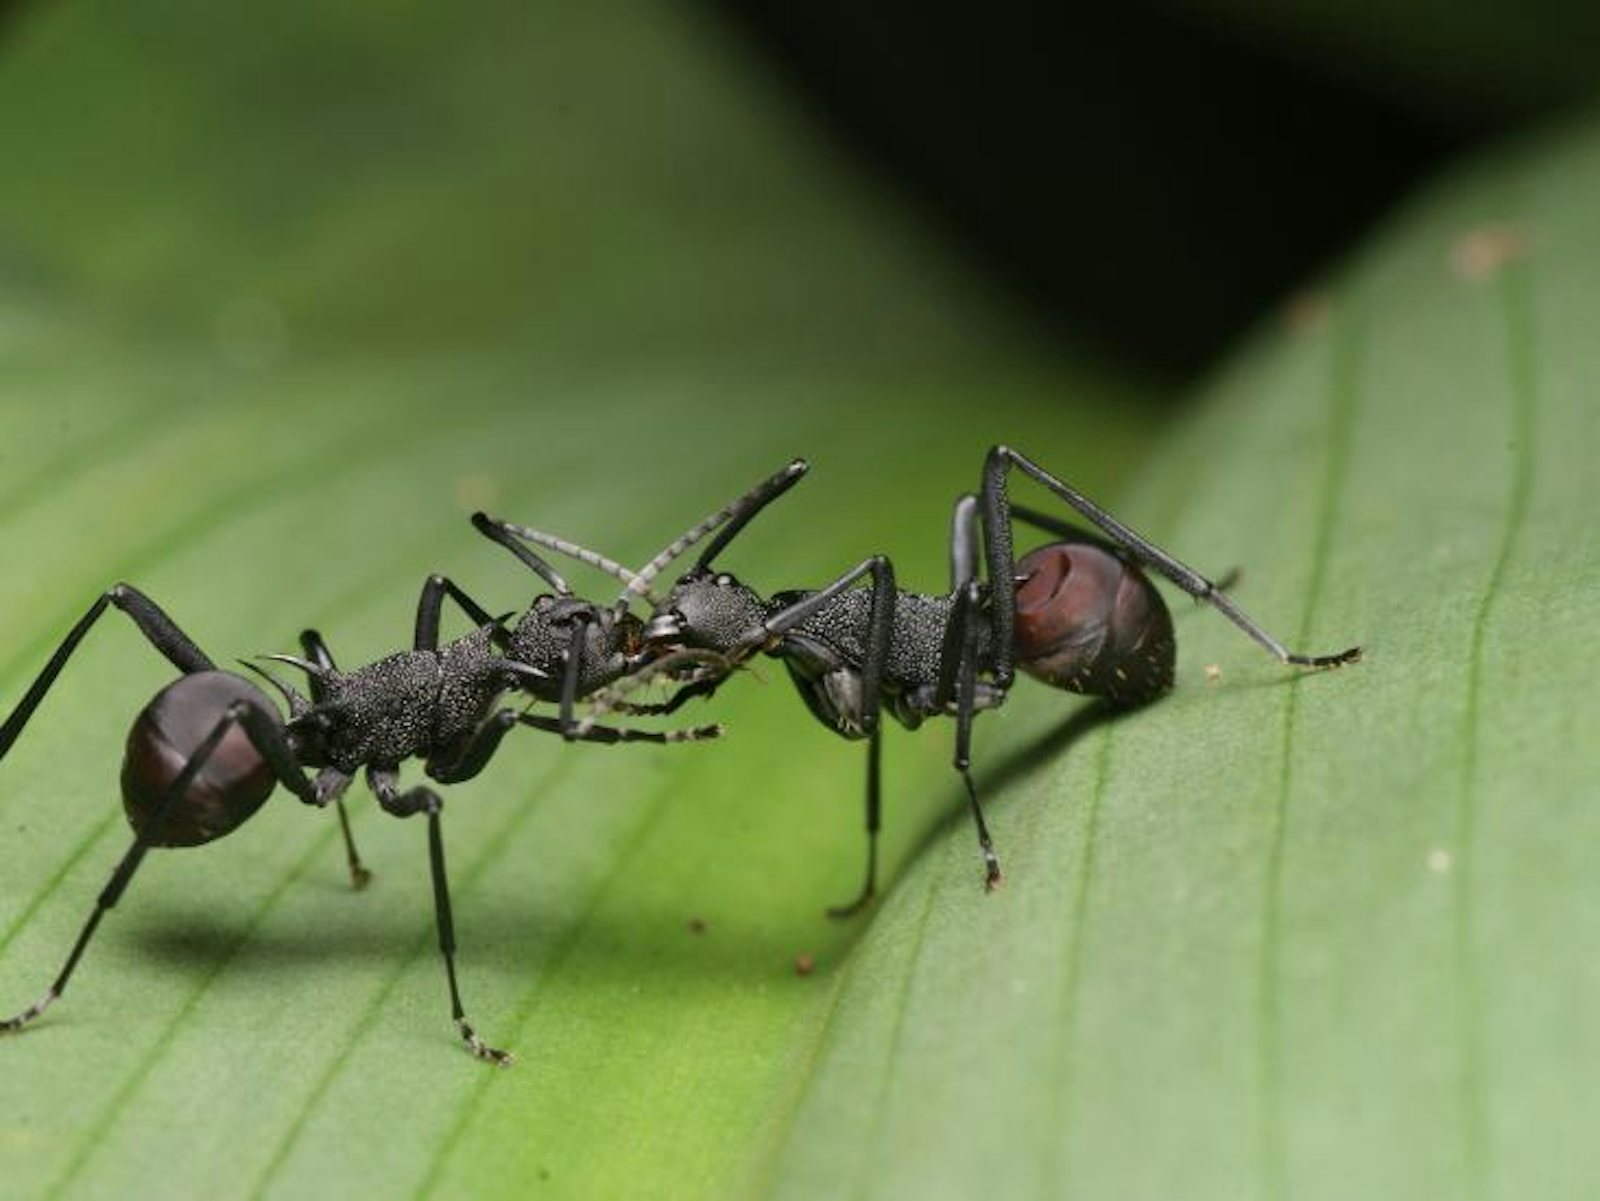 fighting ants